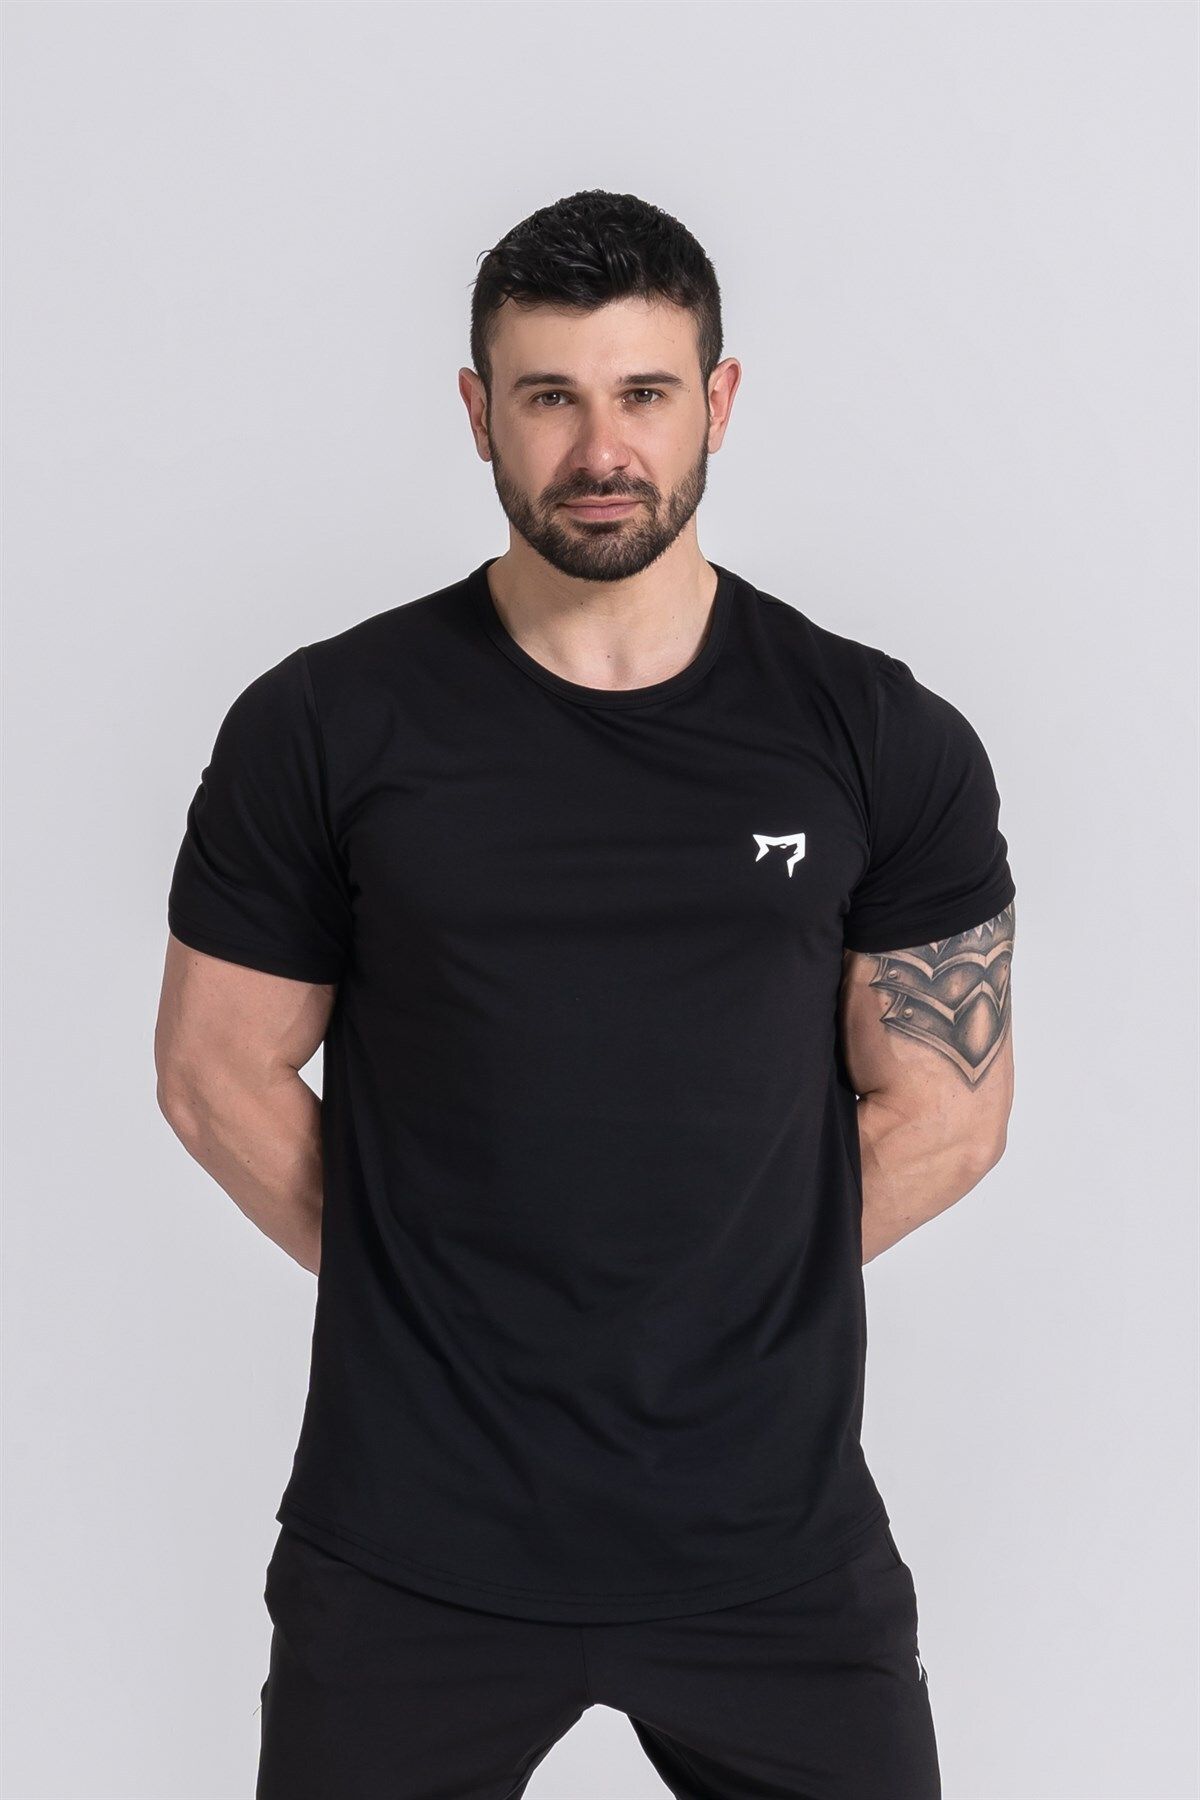 Gymwolves Erkek Spor T-shirt | Siyah | Workout Tanktop |